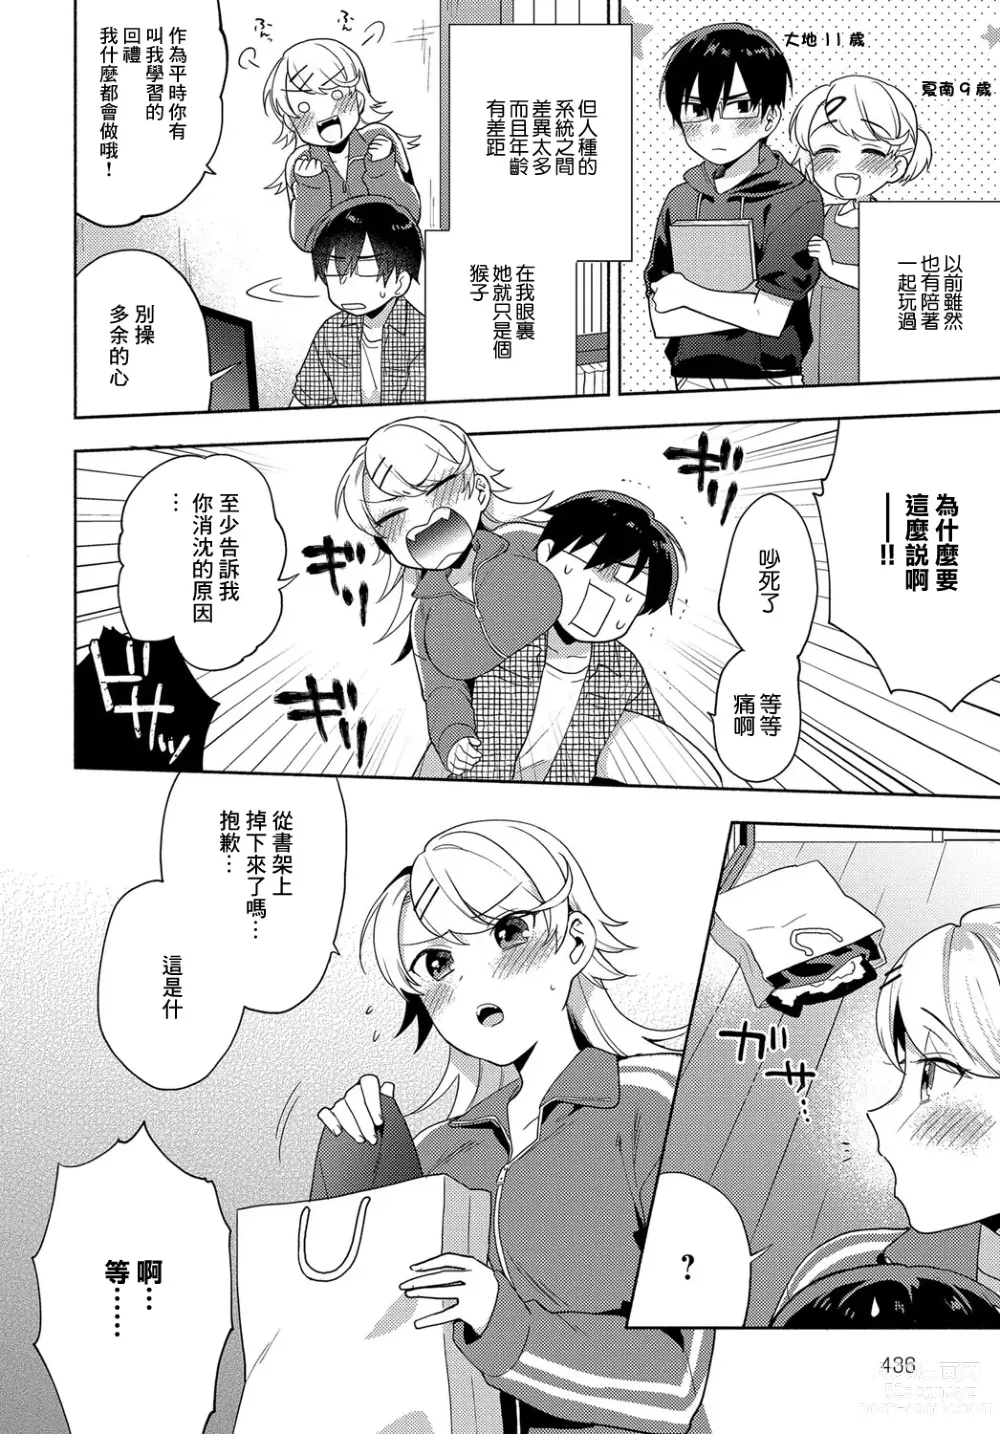 Page 2 of manga Koigokoro Frill